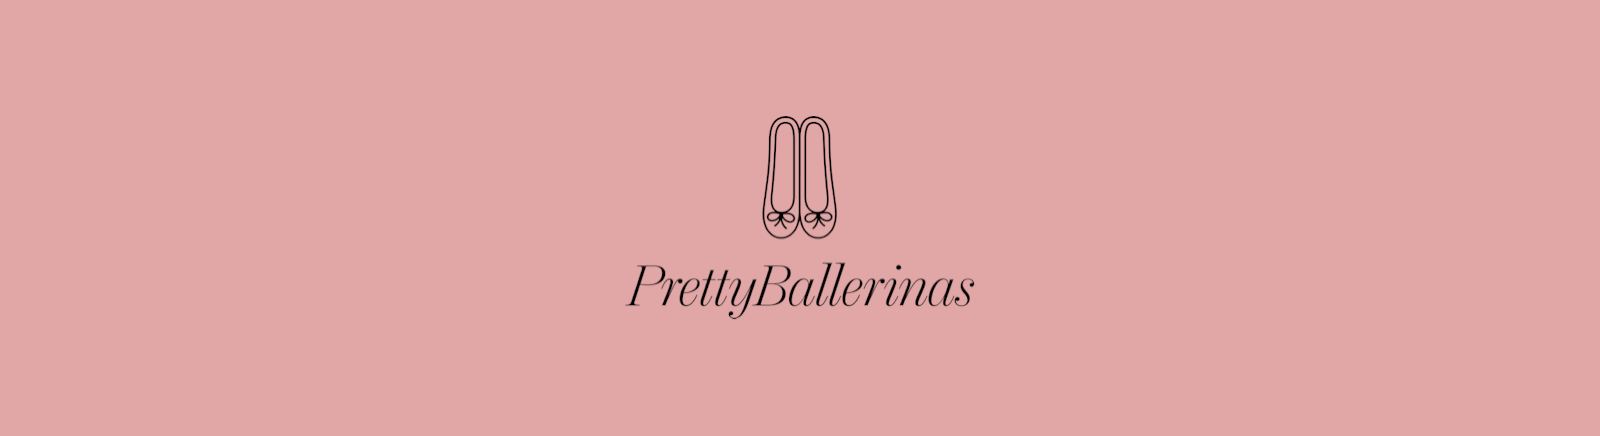 Pretty Ballerinas Ballerinas für Damen im Online-Shop von GISY kaufen